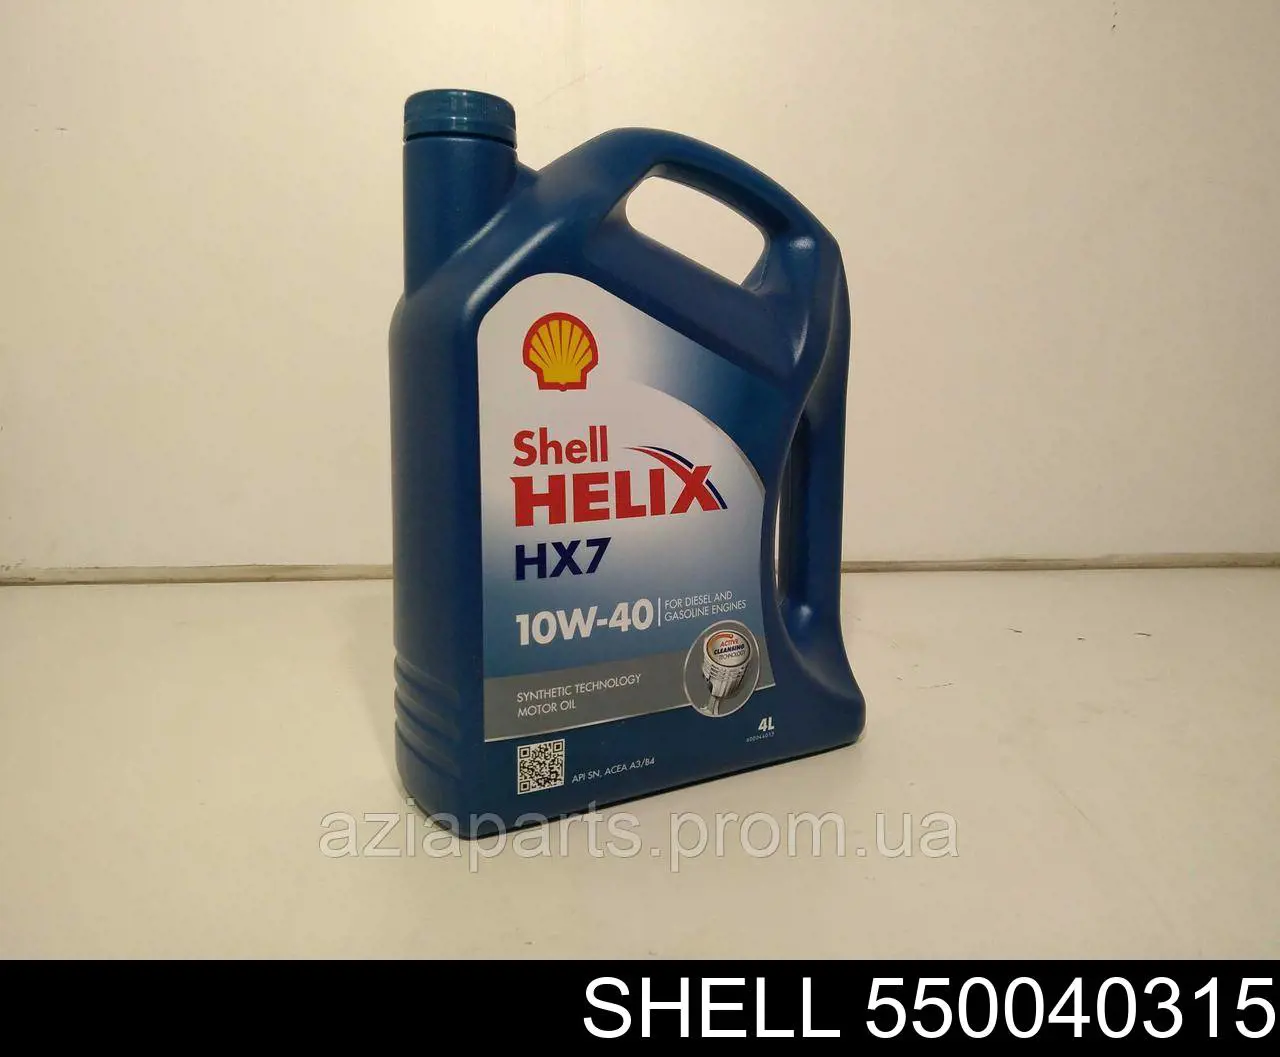 Моторное масло Shell Helix HX7 10W-40 Полусинтетическое 4л (550040315)